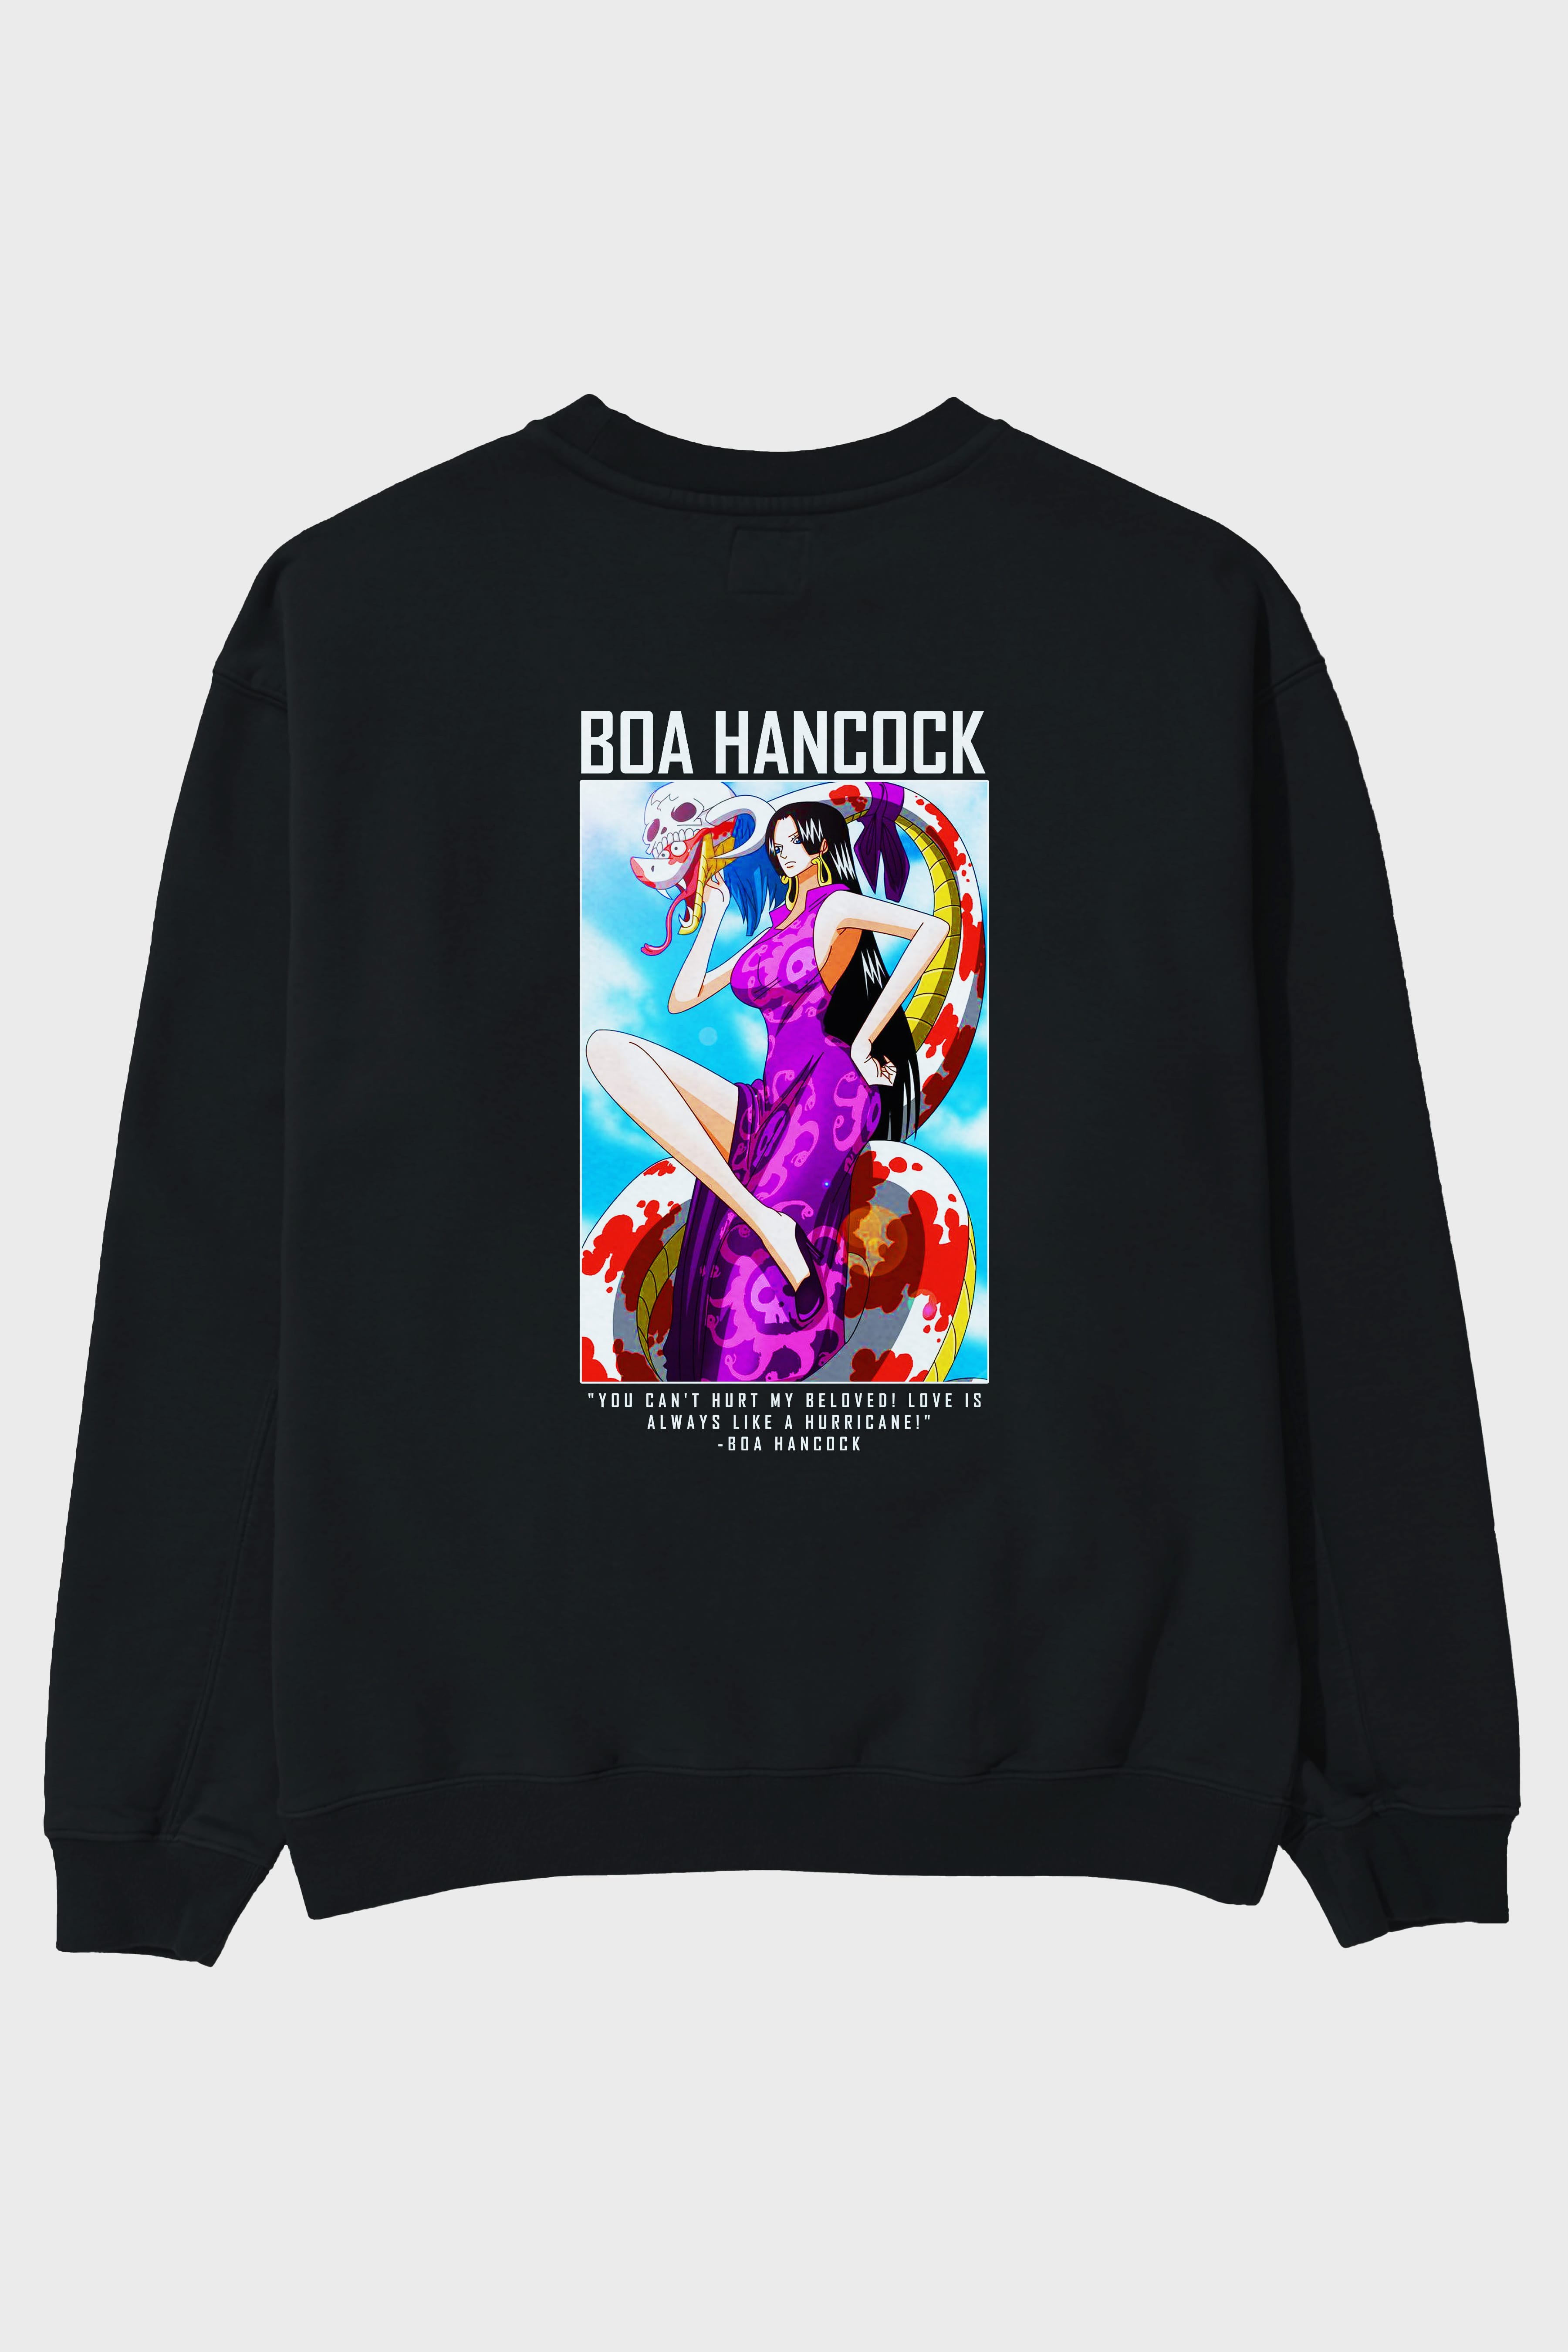 Boa Hancock Arka Baskılı Anime Oversize Sweatshirt Erkek Kadın Unisex